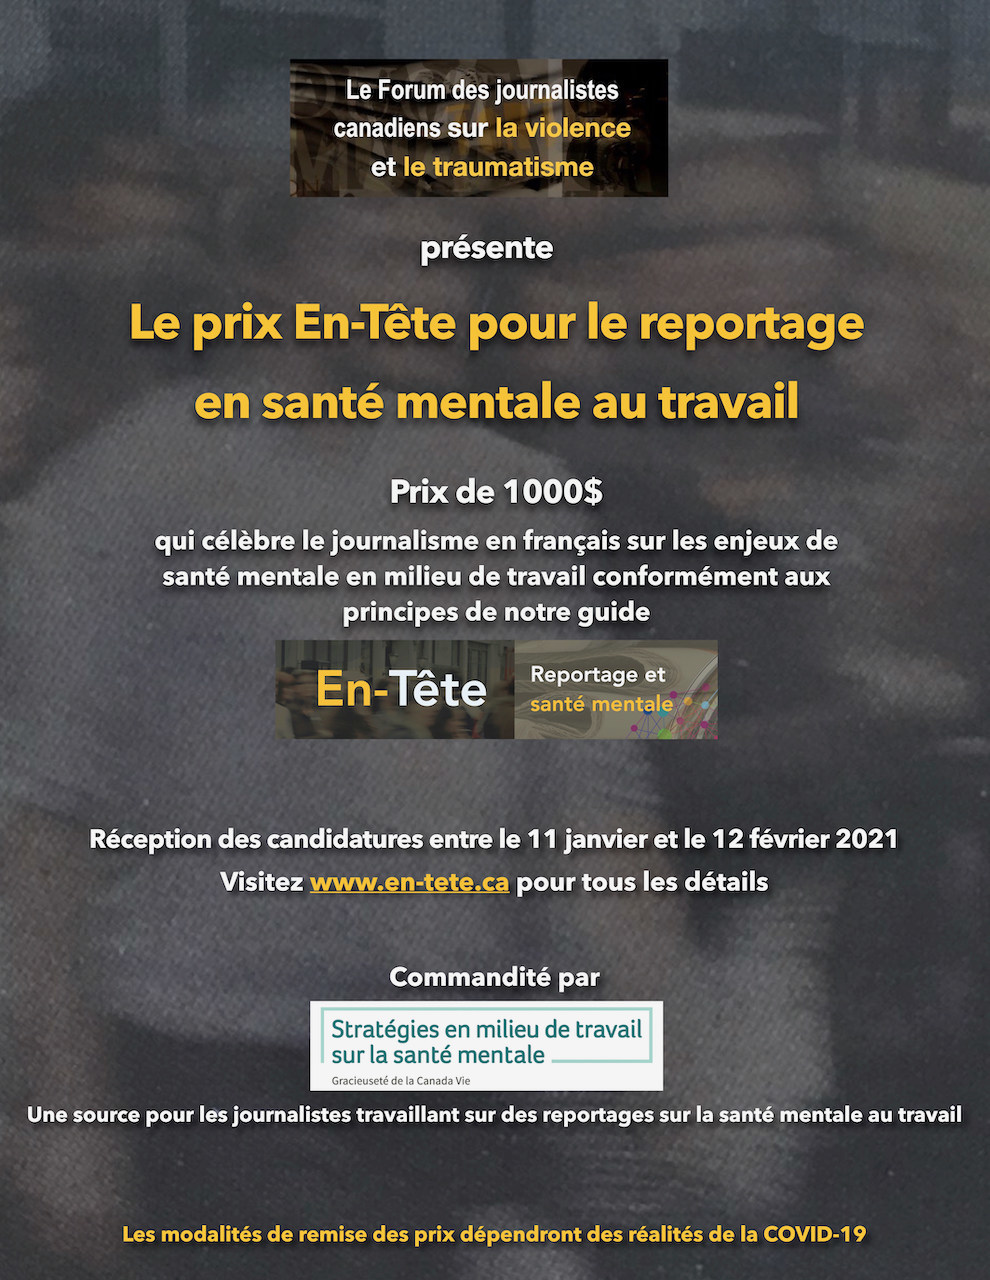 Affiche pour le concours du prix En-Tête, 2020 (Groupe CNW/Le Forum des journalistes canadiens sur la violence et le traumatisme)